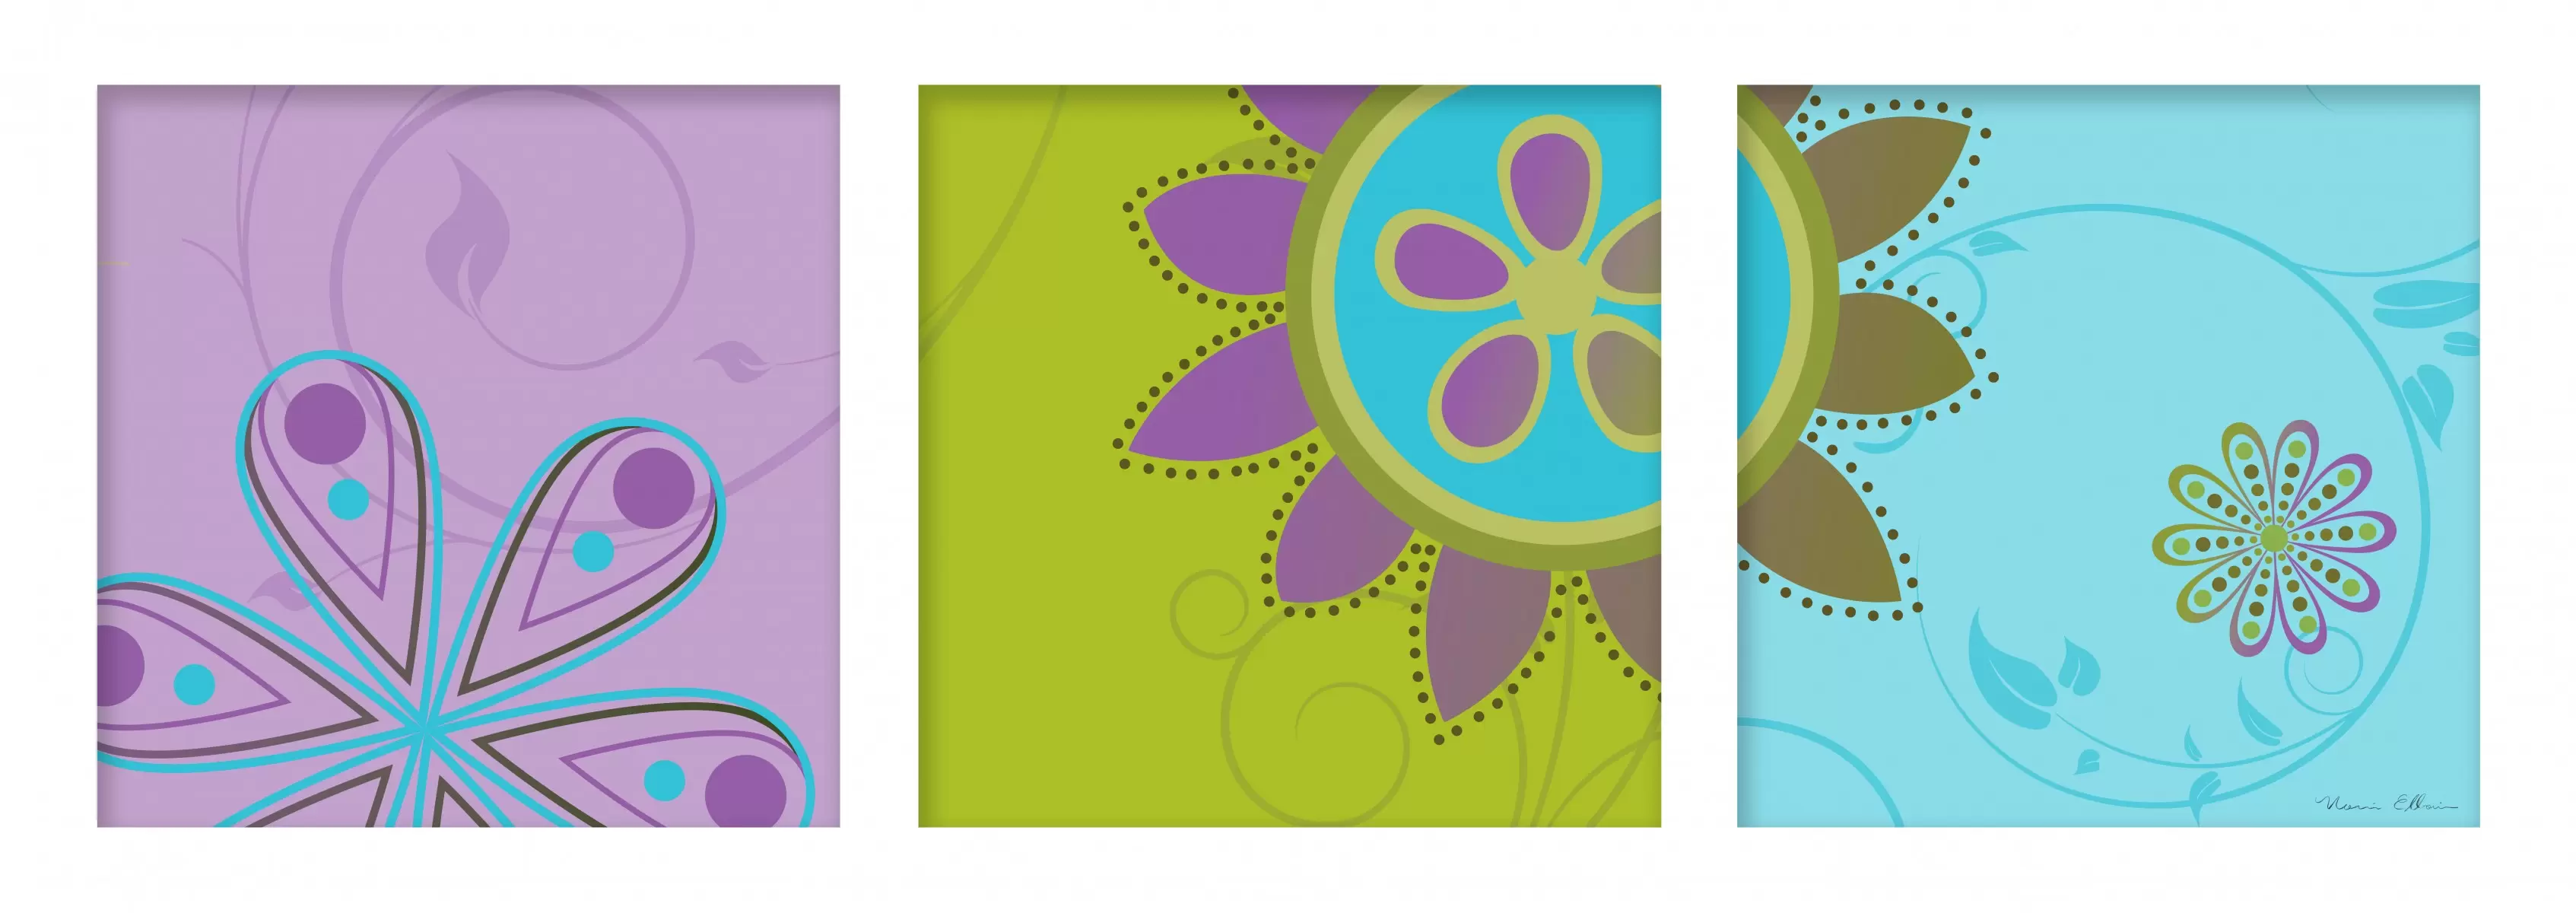 שלישייה פורחת - נעמי עיצובים - תבניות של פרחים וצמחים תמונות בחלקים  - מק''ט: 160018